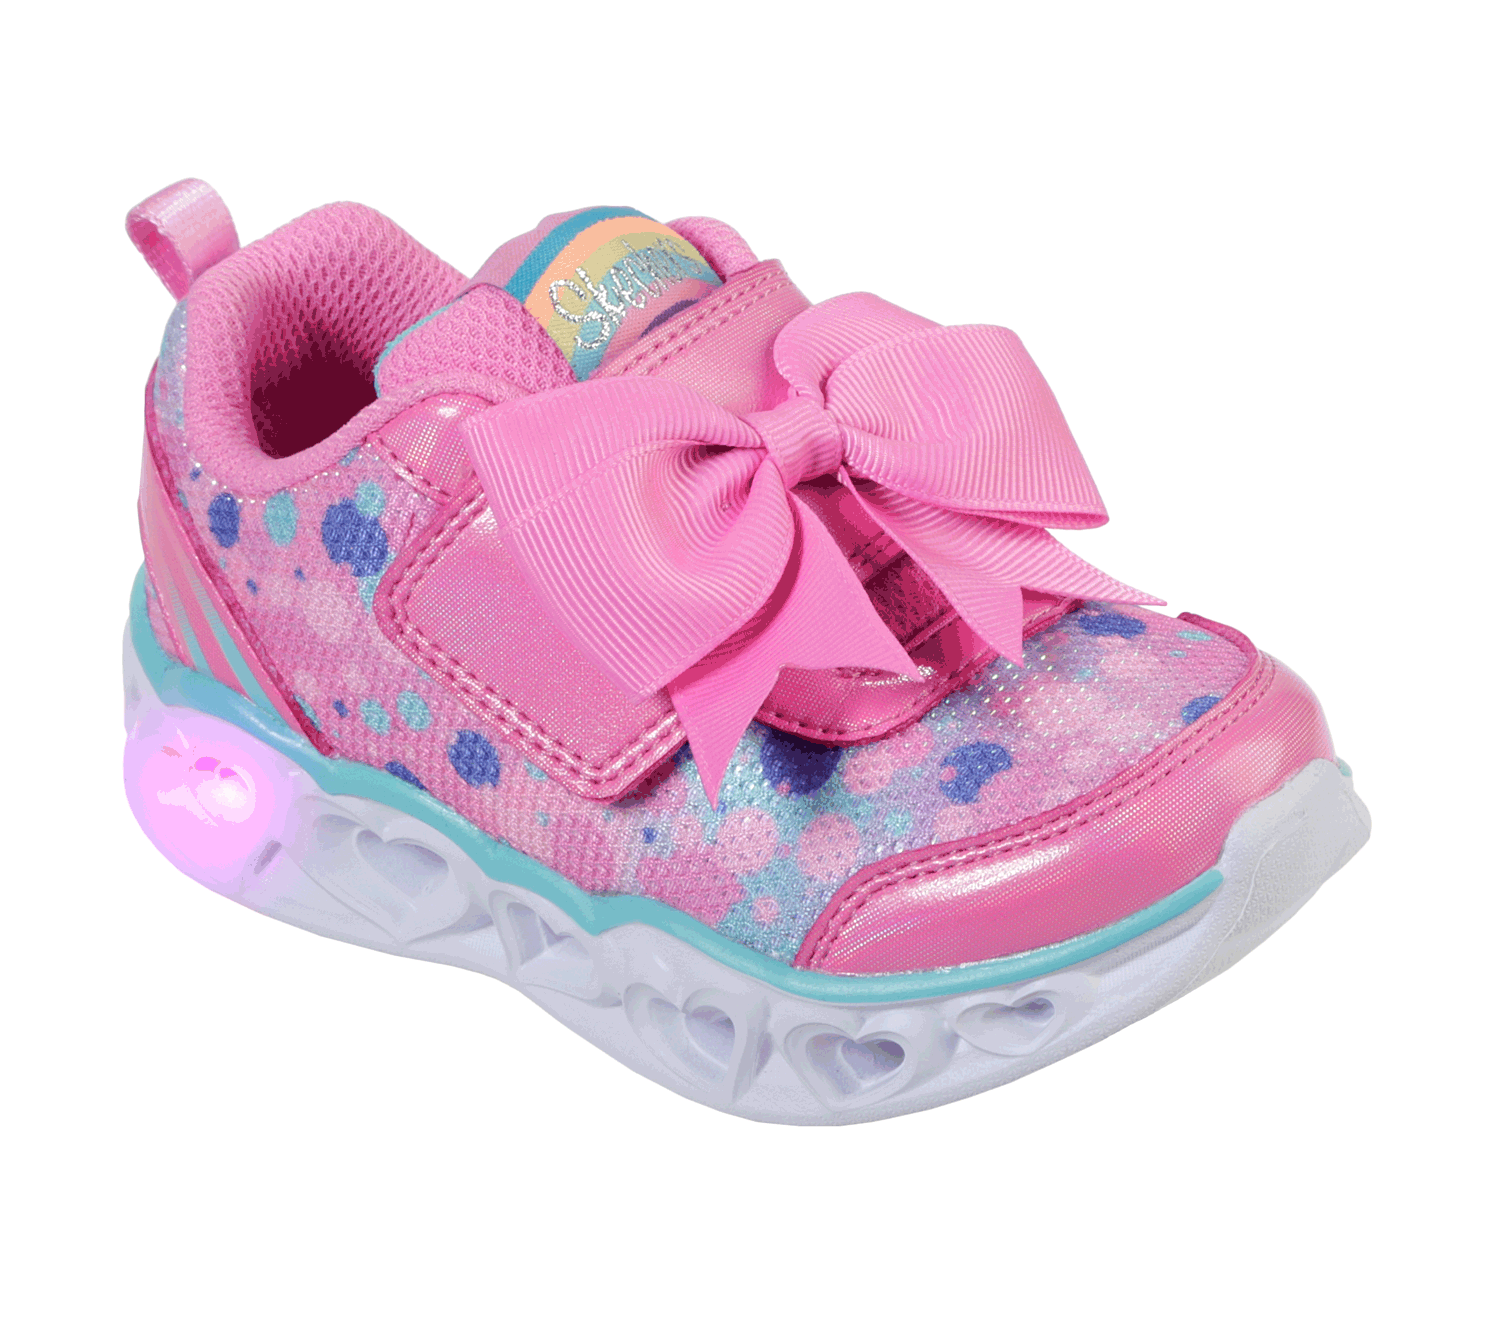 skechers light up shoes toddler girl